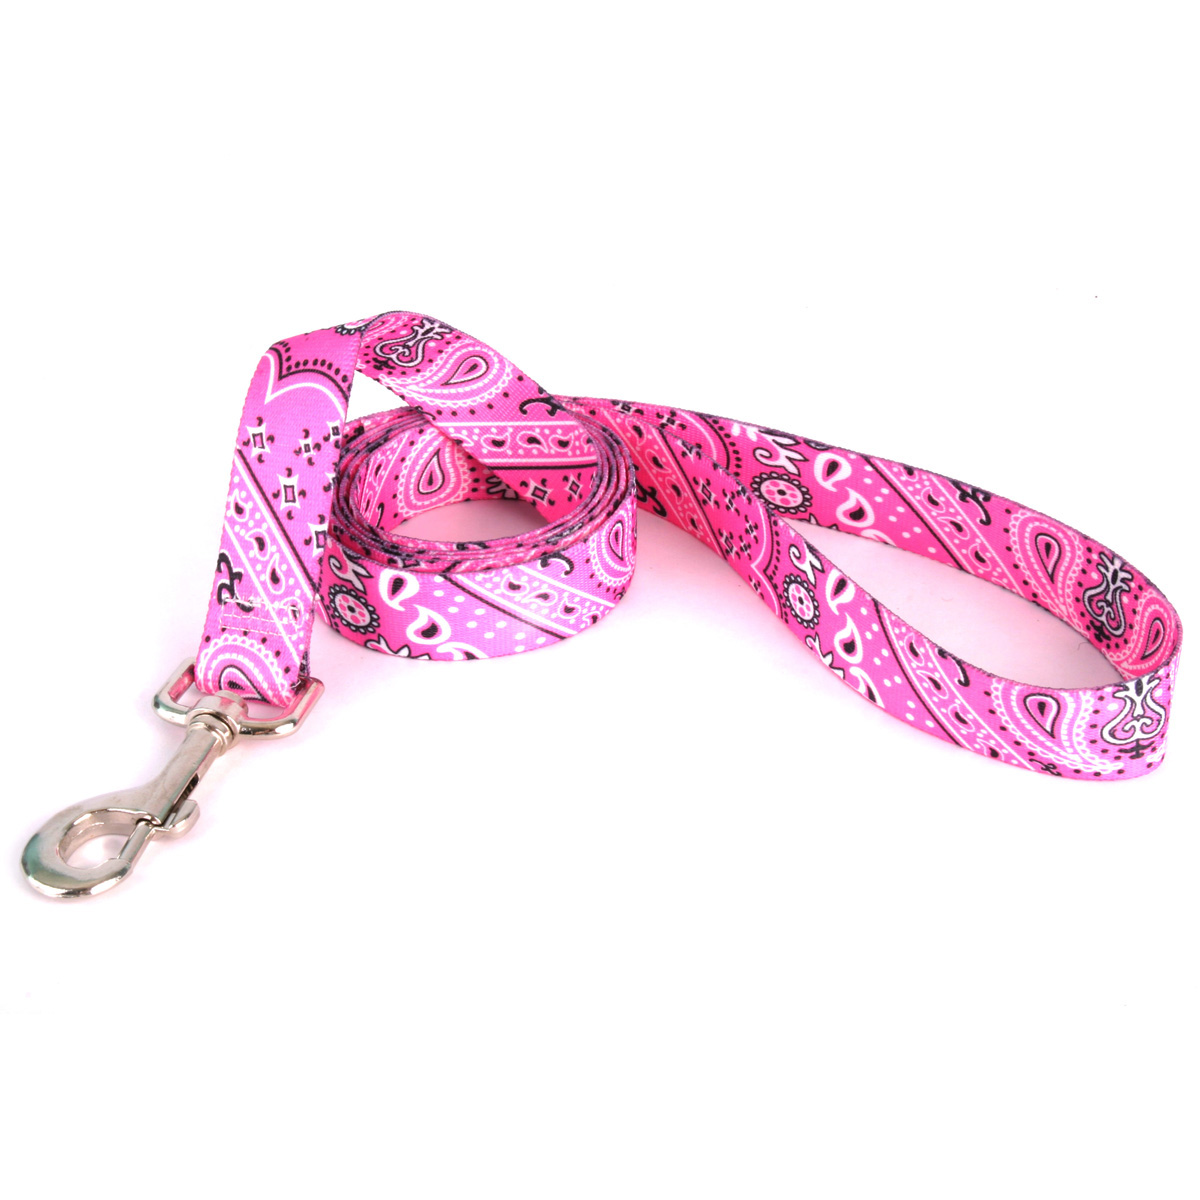 Bandana Dog Leash by Yellow Dog - Pink